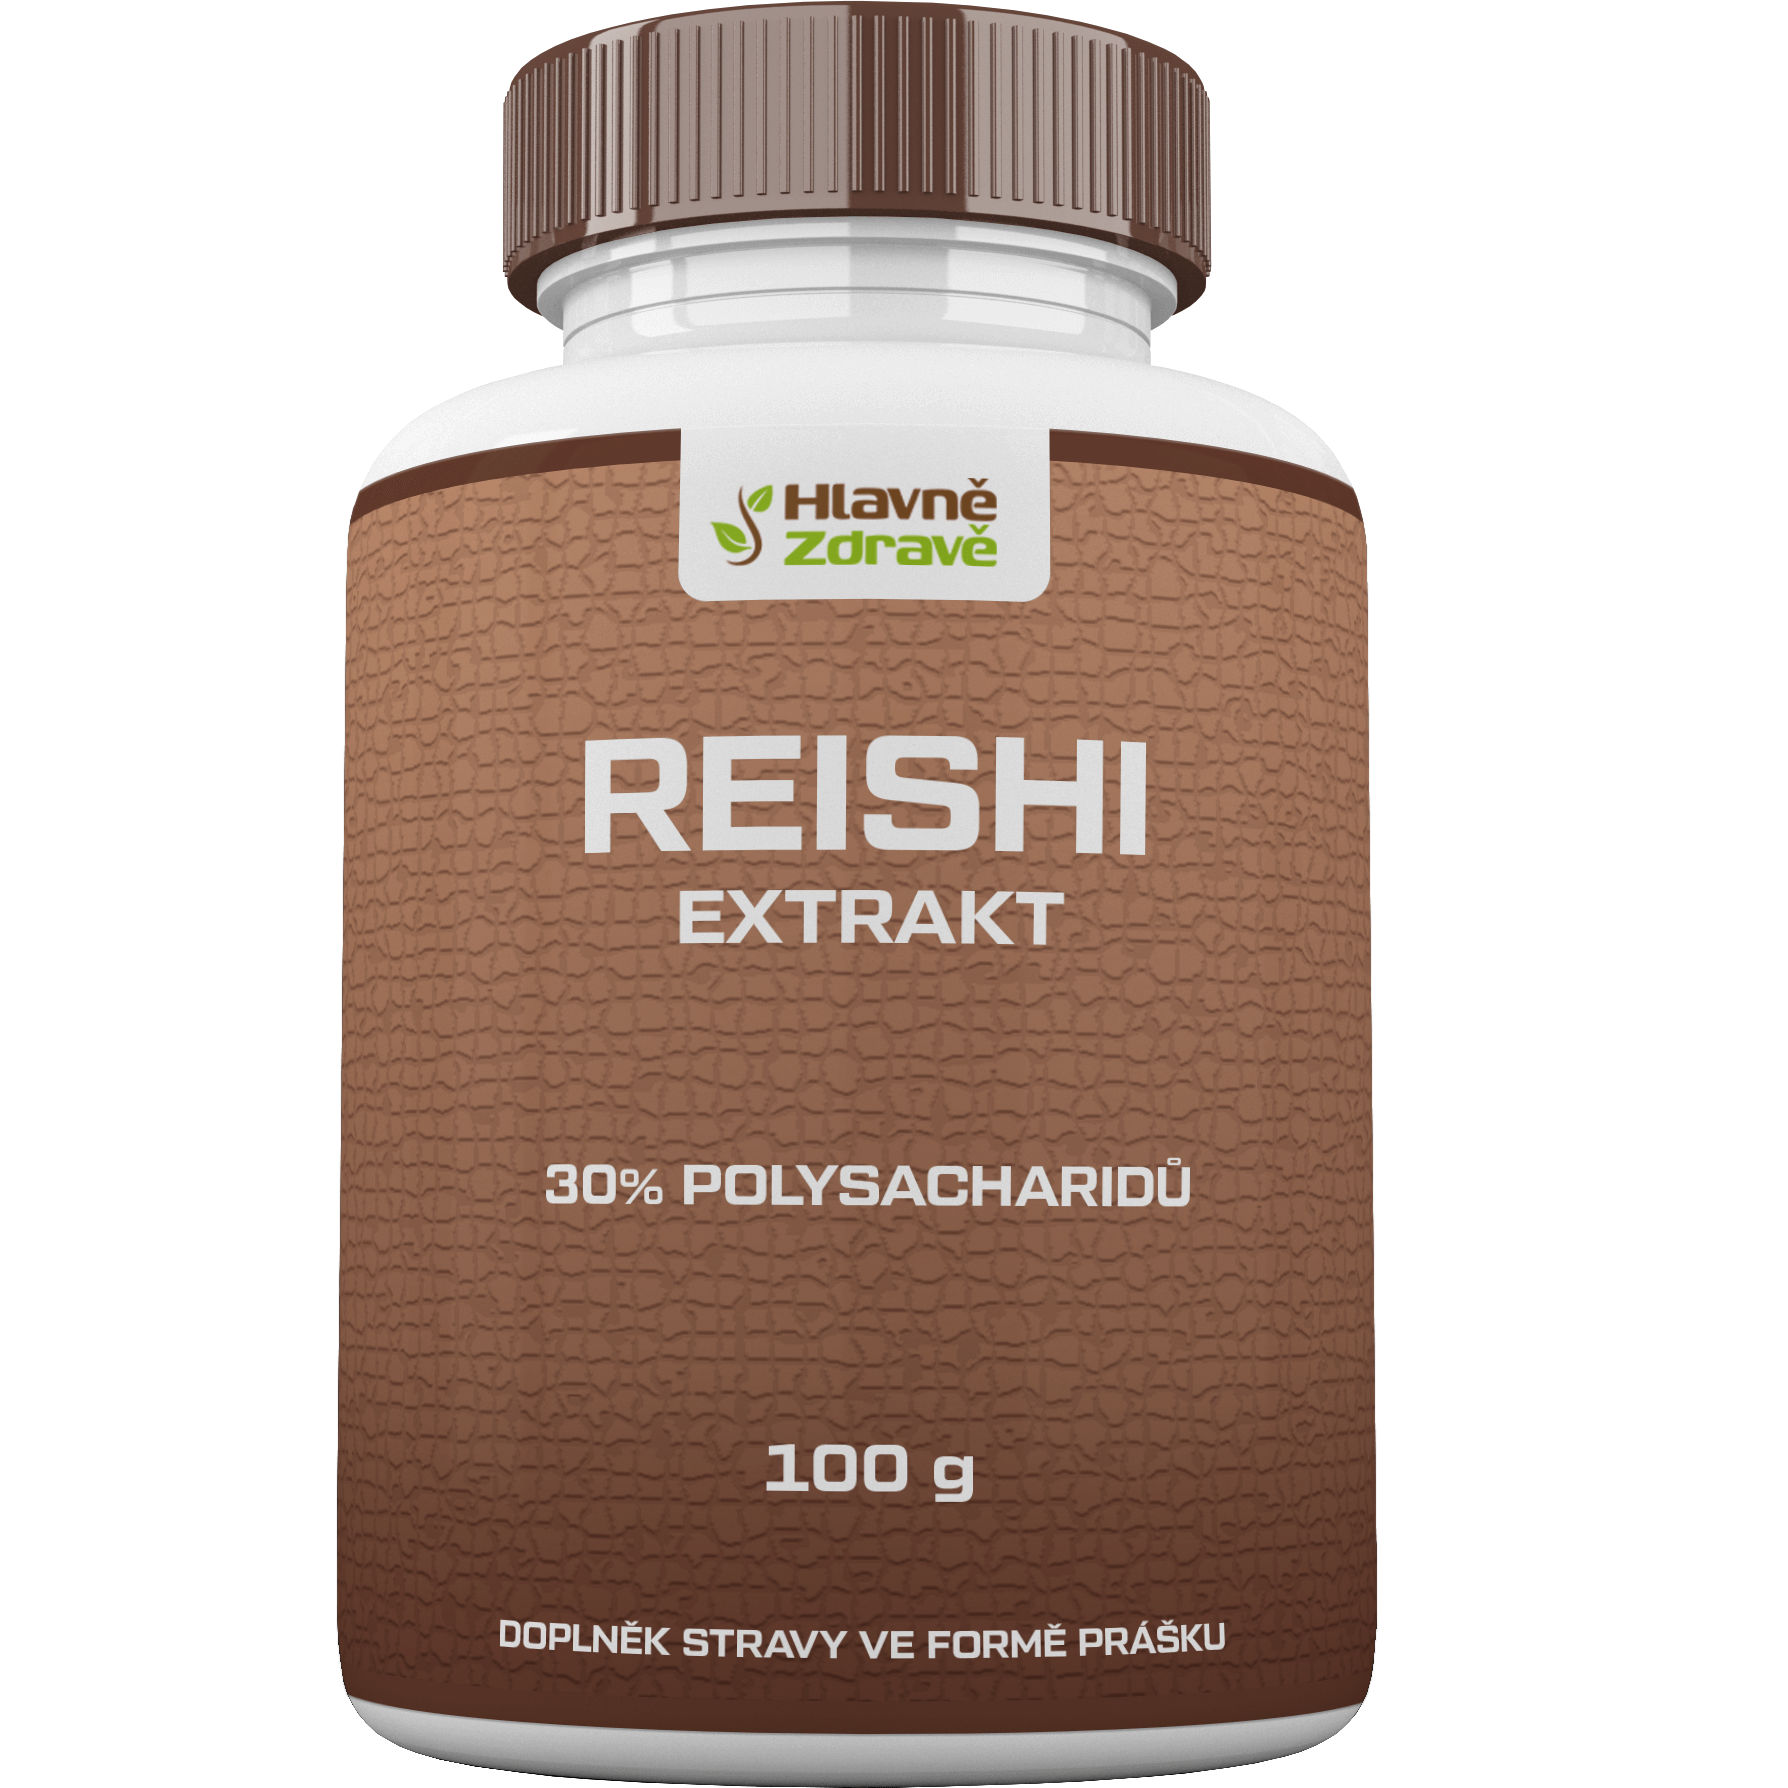 reishi extrakt prášek 30% polysacharidů 100g